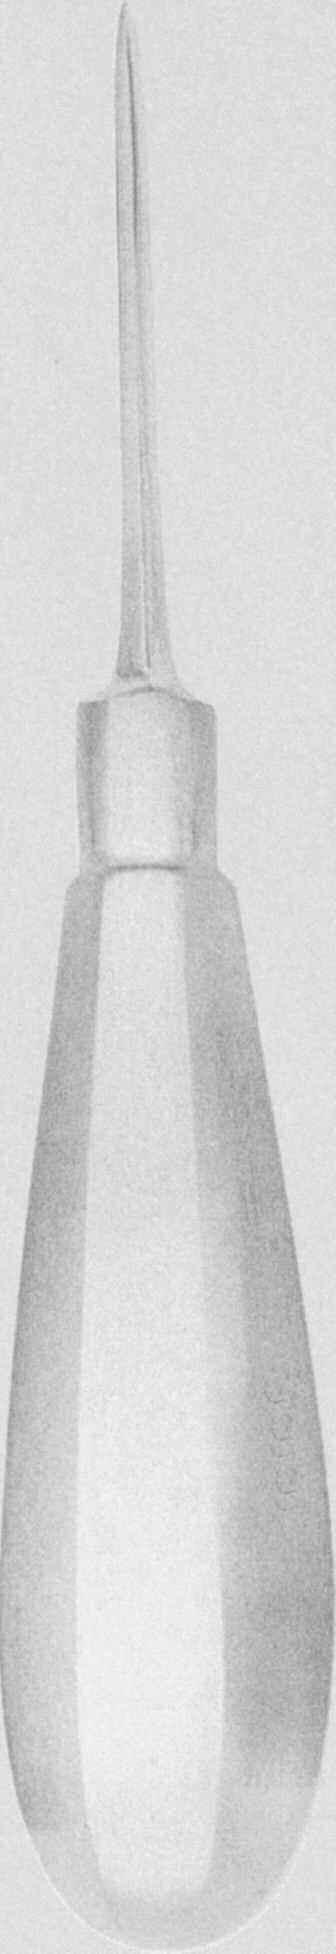 一䌀䤀 䰀䰀䤀 Pointe carrée ZD1375M - 25cm (80 gr) Tige ronde Rond stern Vástago redondo D11224M - 2 mm -16.